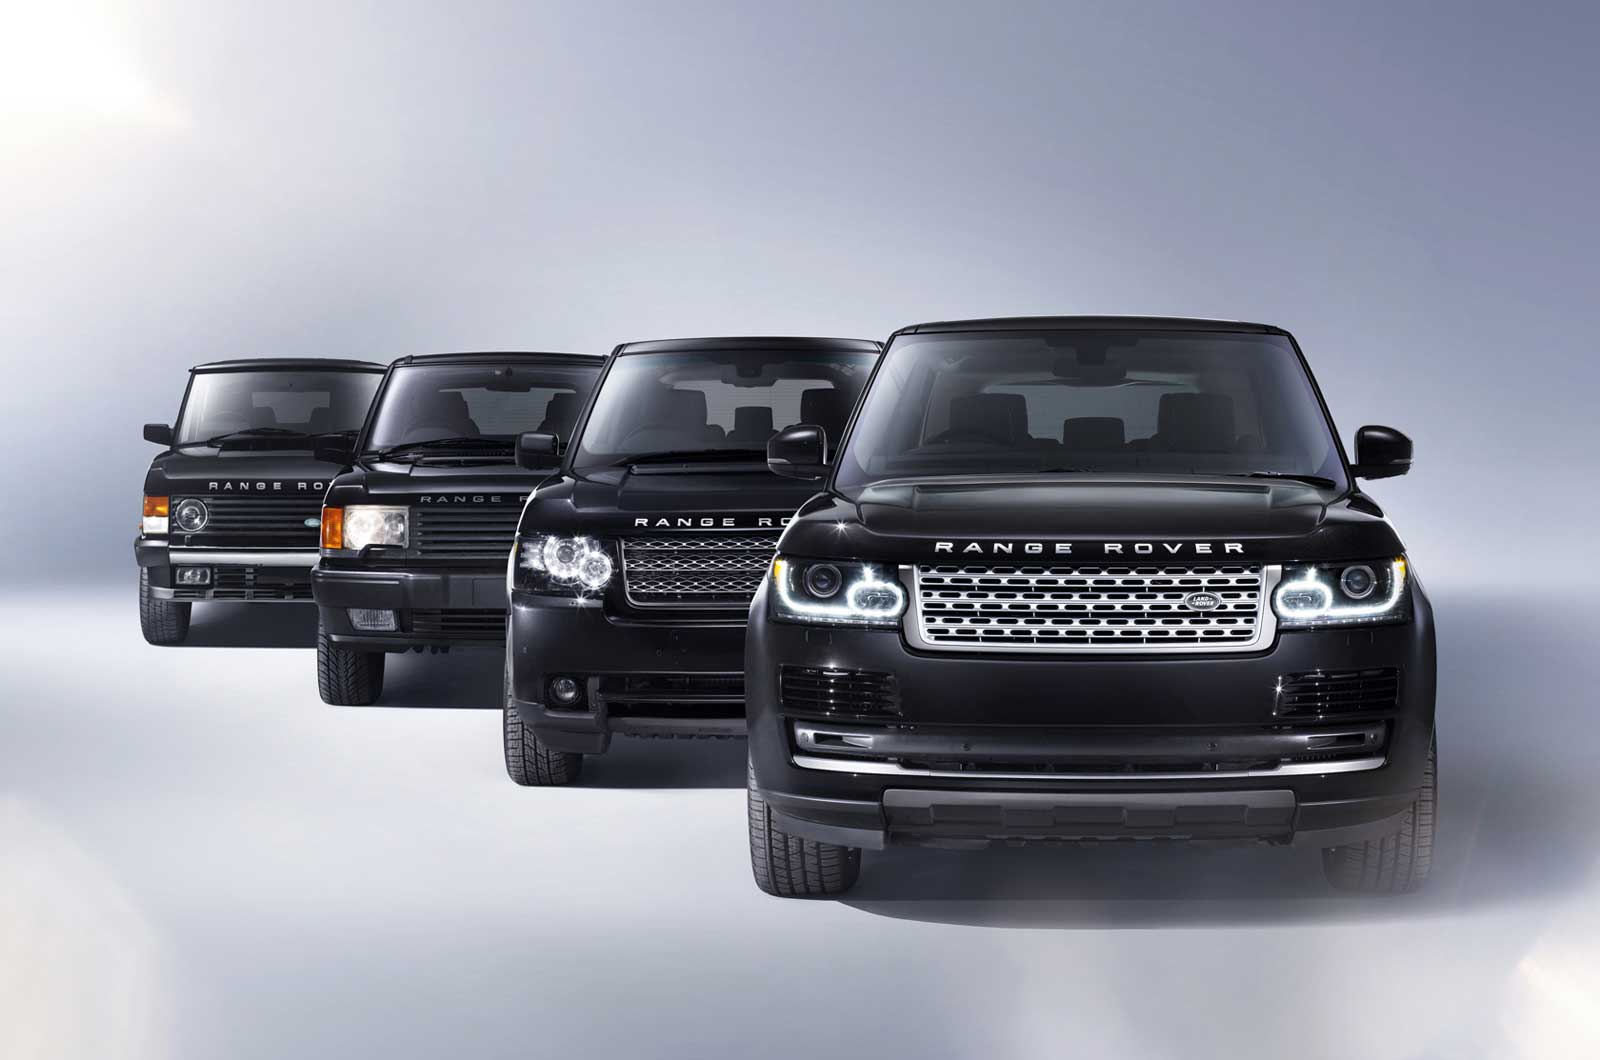 Conheça a história do Range Rover em 2 minutos